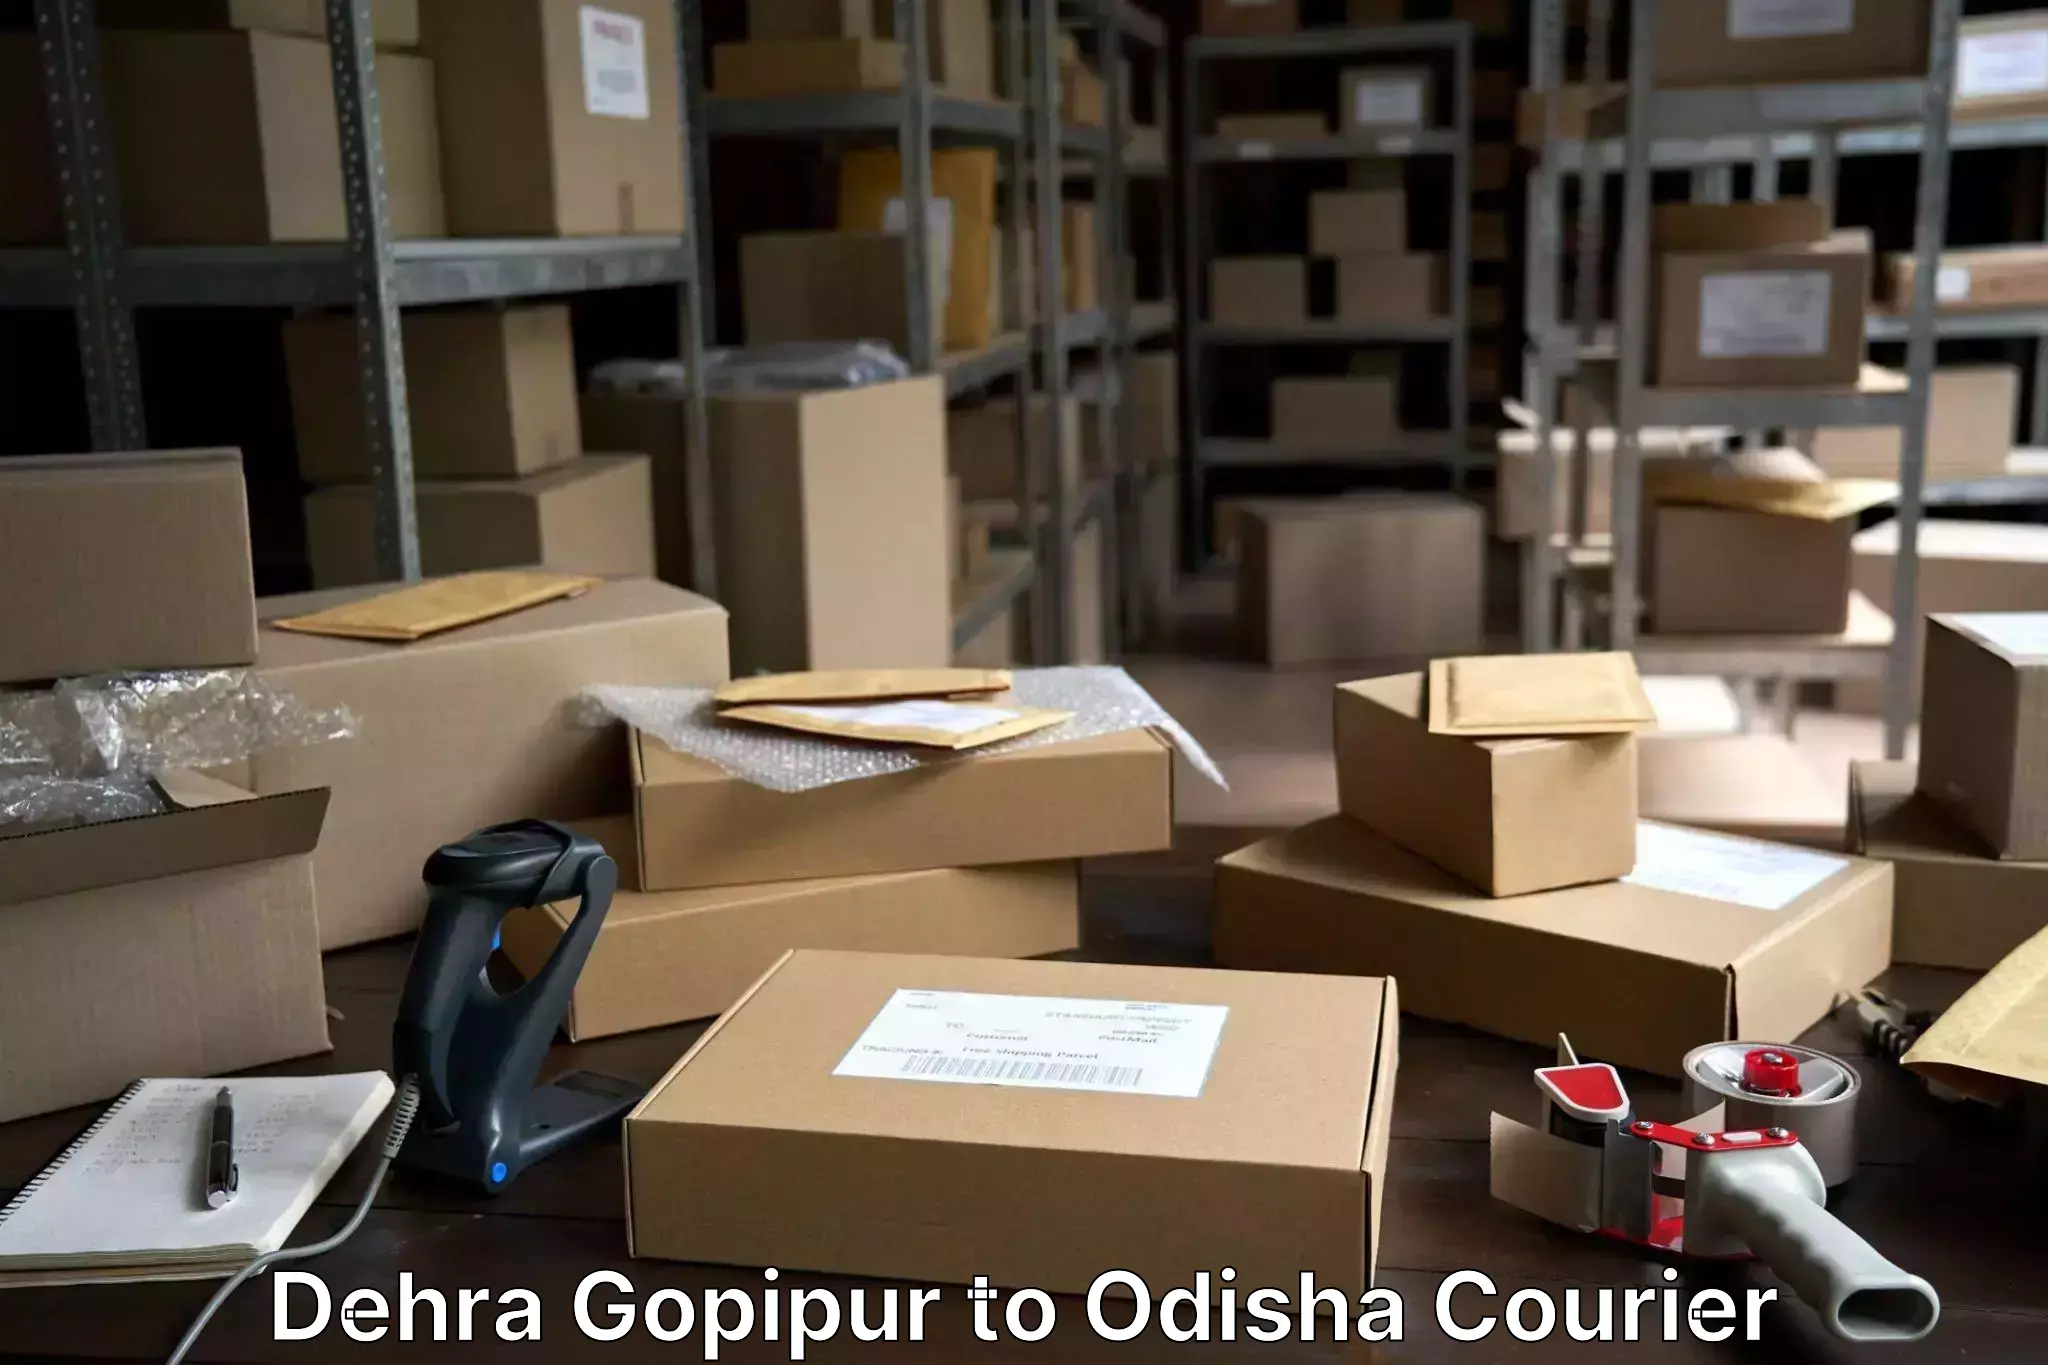 Baggage shipping experience Dehra Gopipur to Balikuda